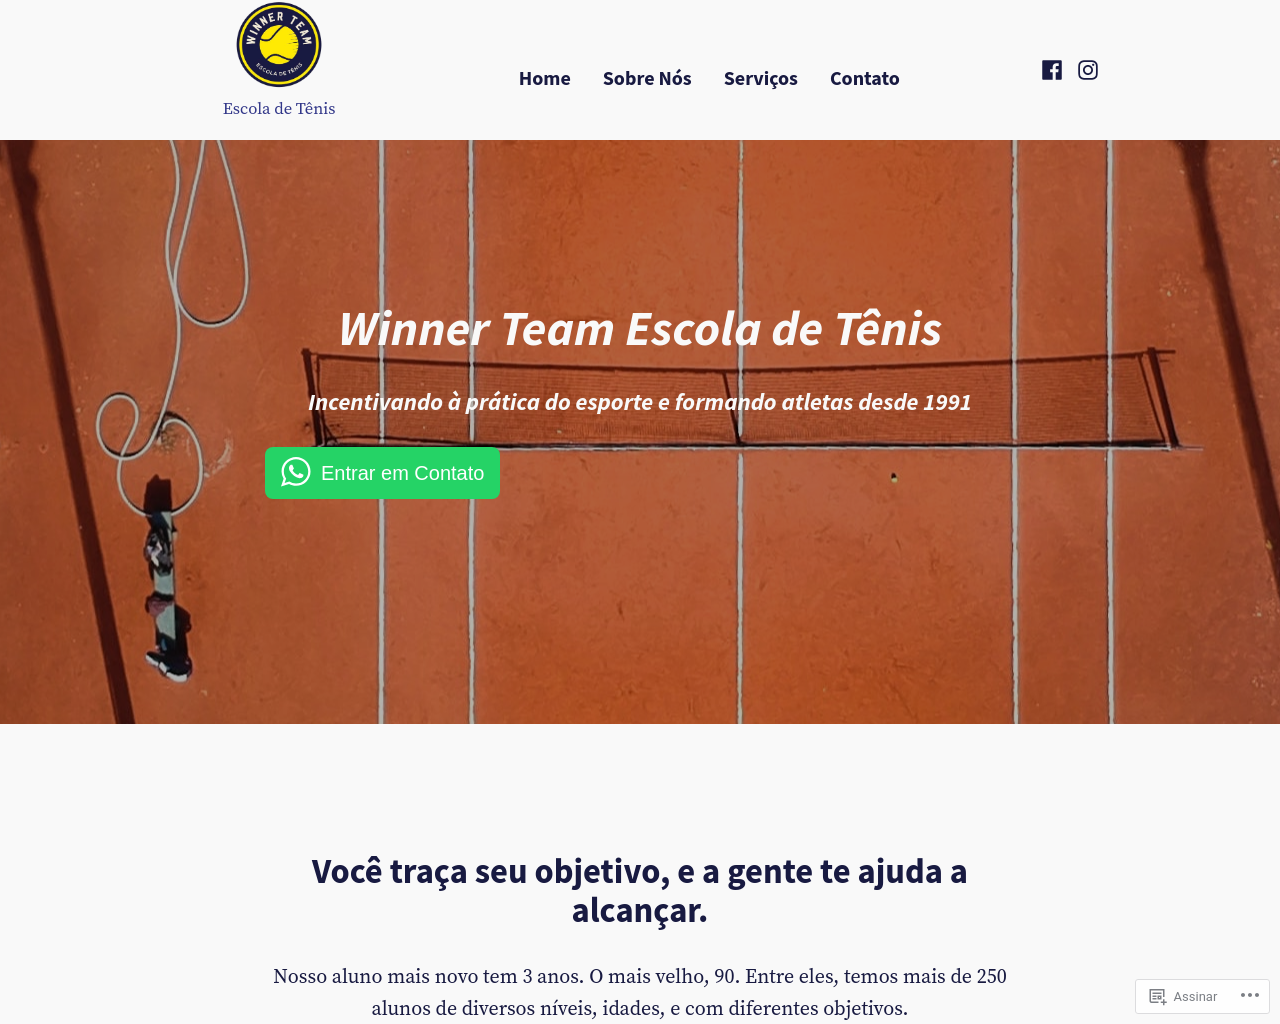 winnerteam.com.br